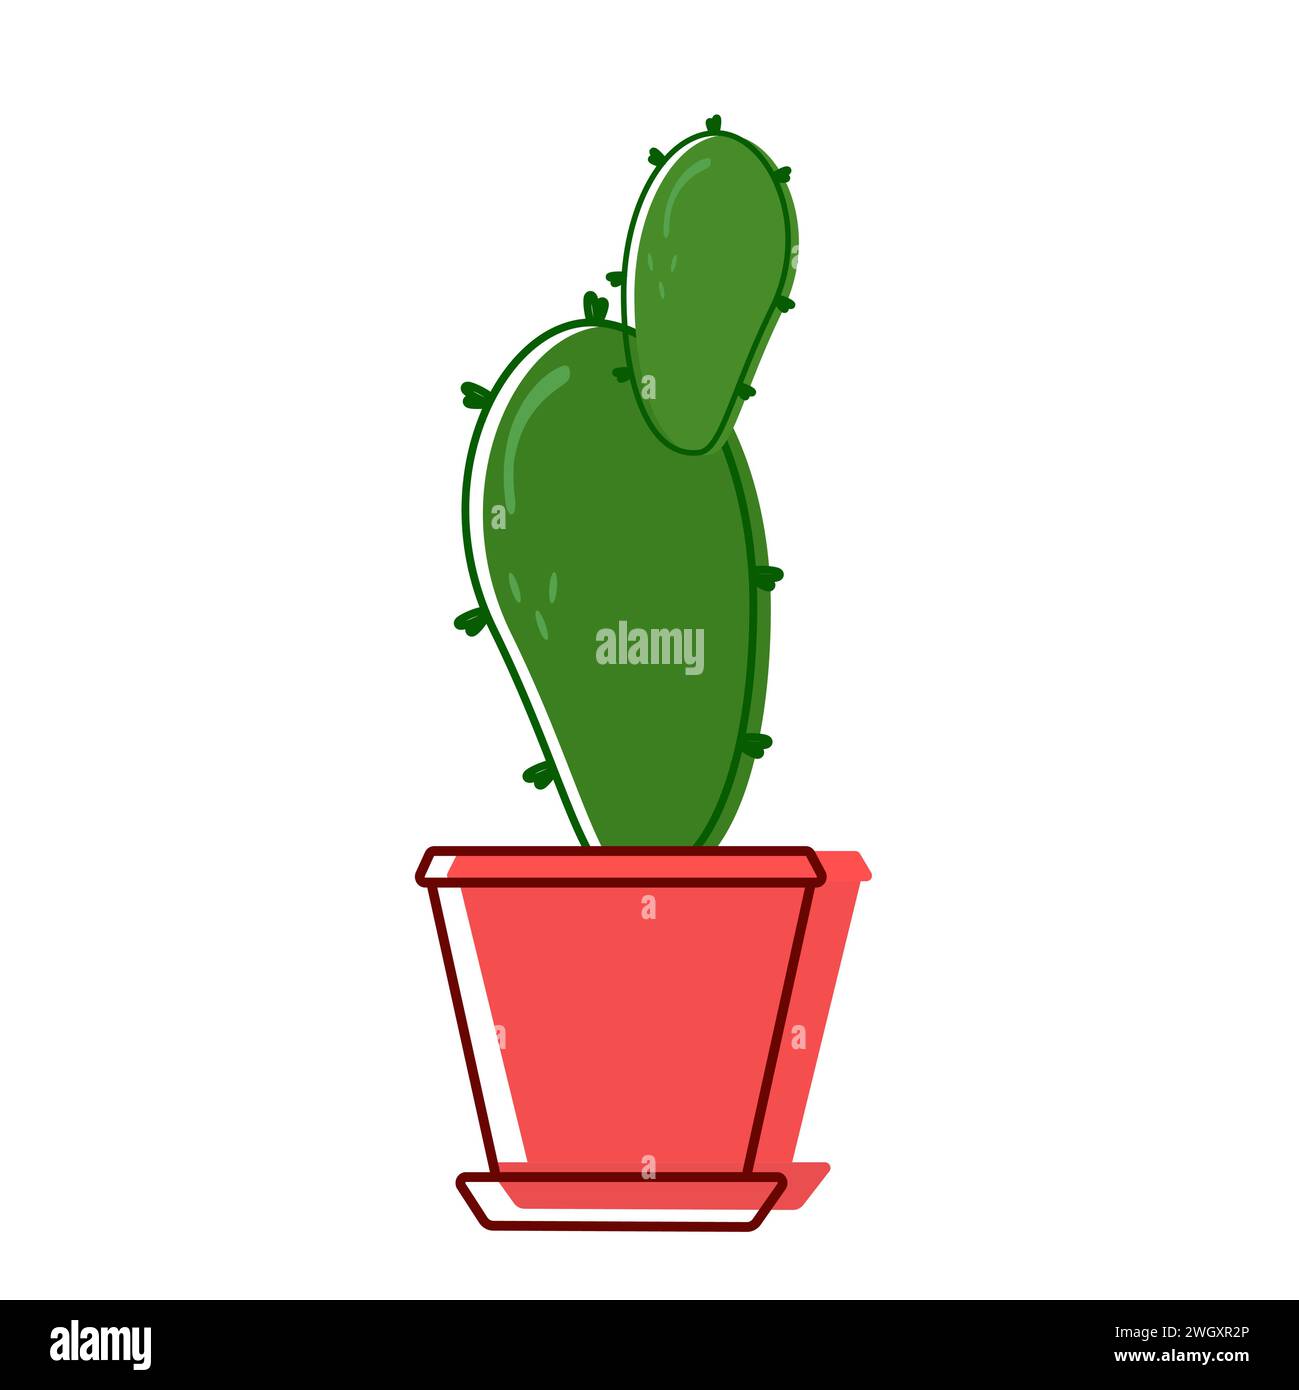 Cactus rosso in pentola rossa con propaggine. La pianta della casa con le punture verdi si trova all'interno di una casa. Vettore. Illustrazione Vettoriale